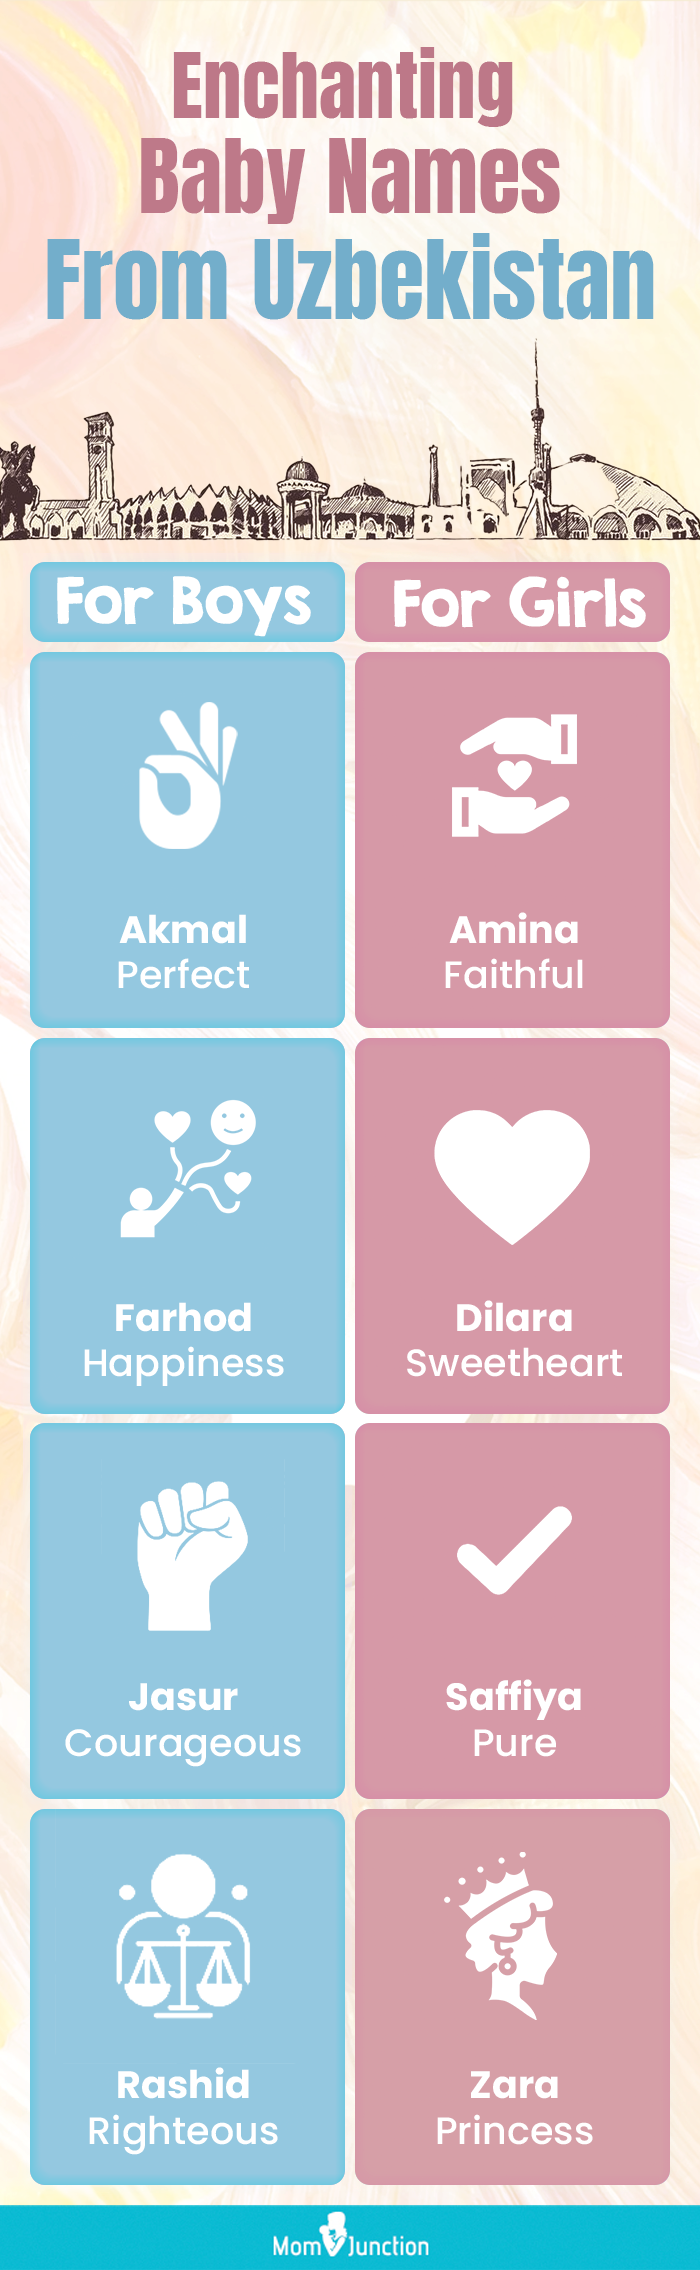 enchanting baby names from uzbejistan (infographic)